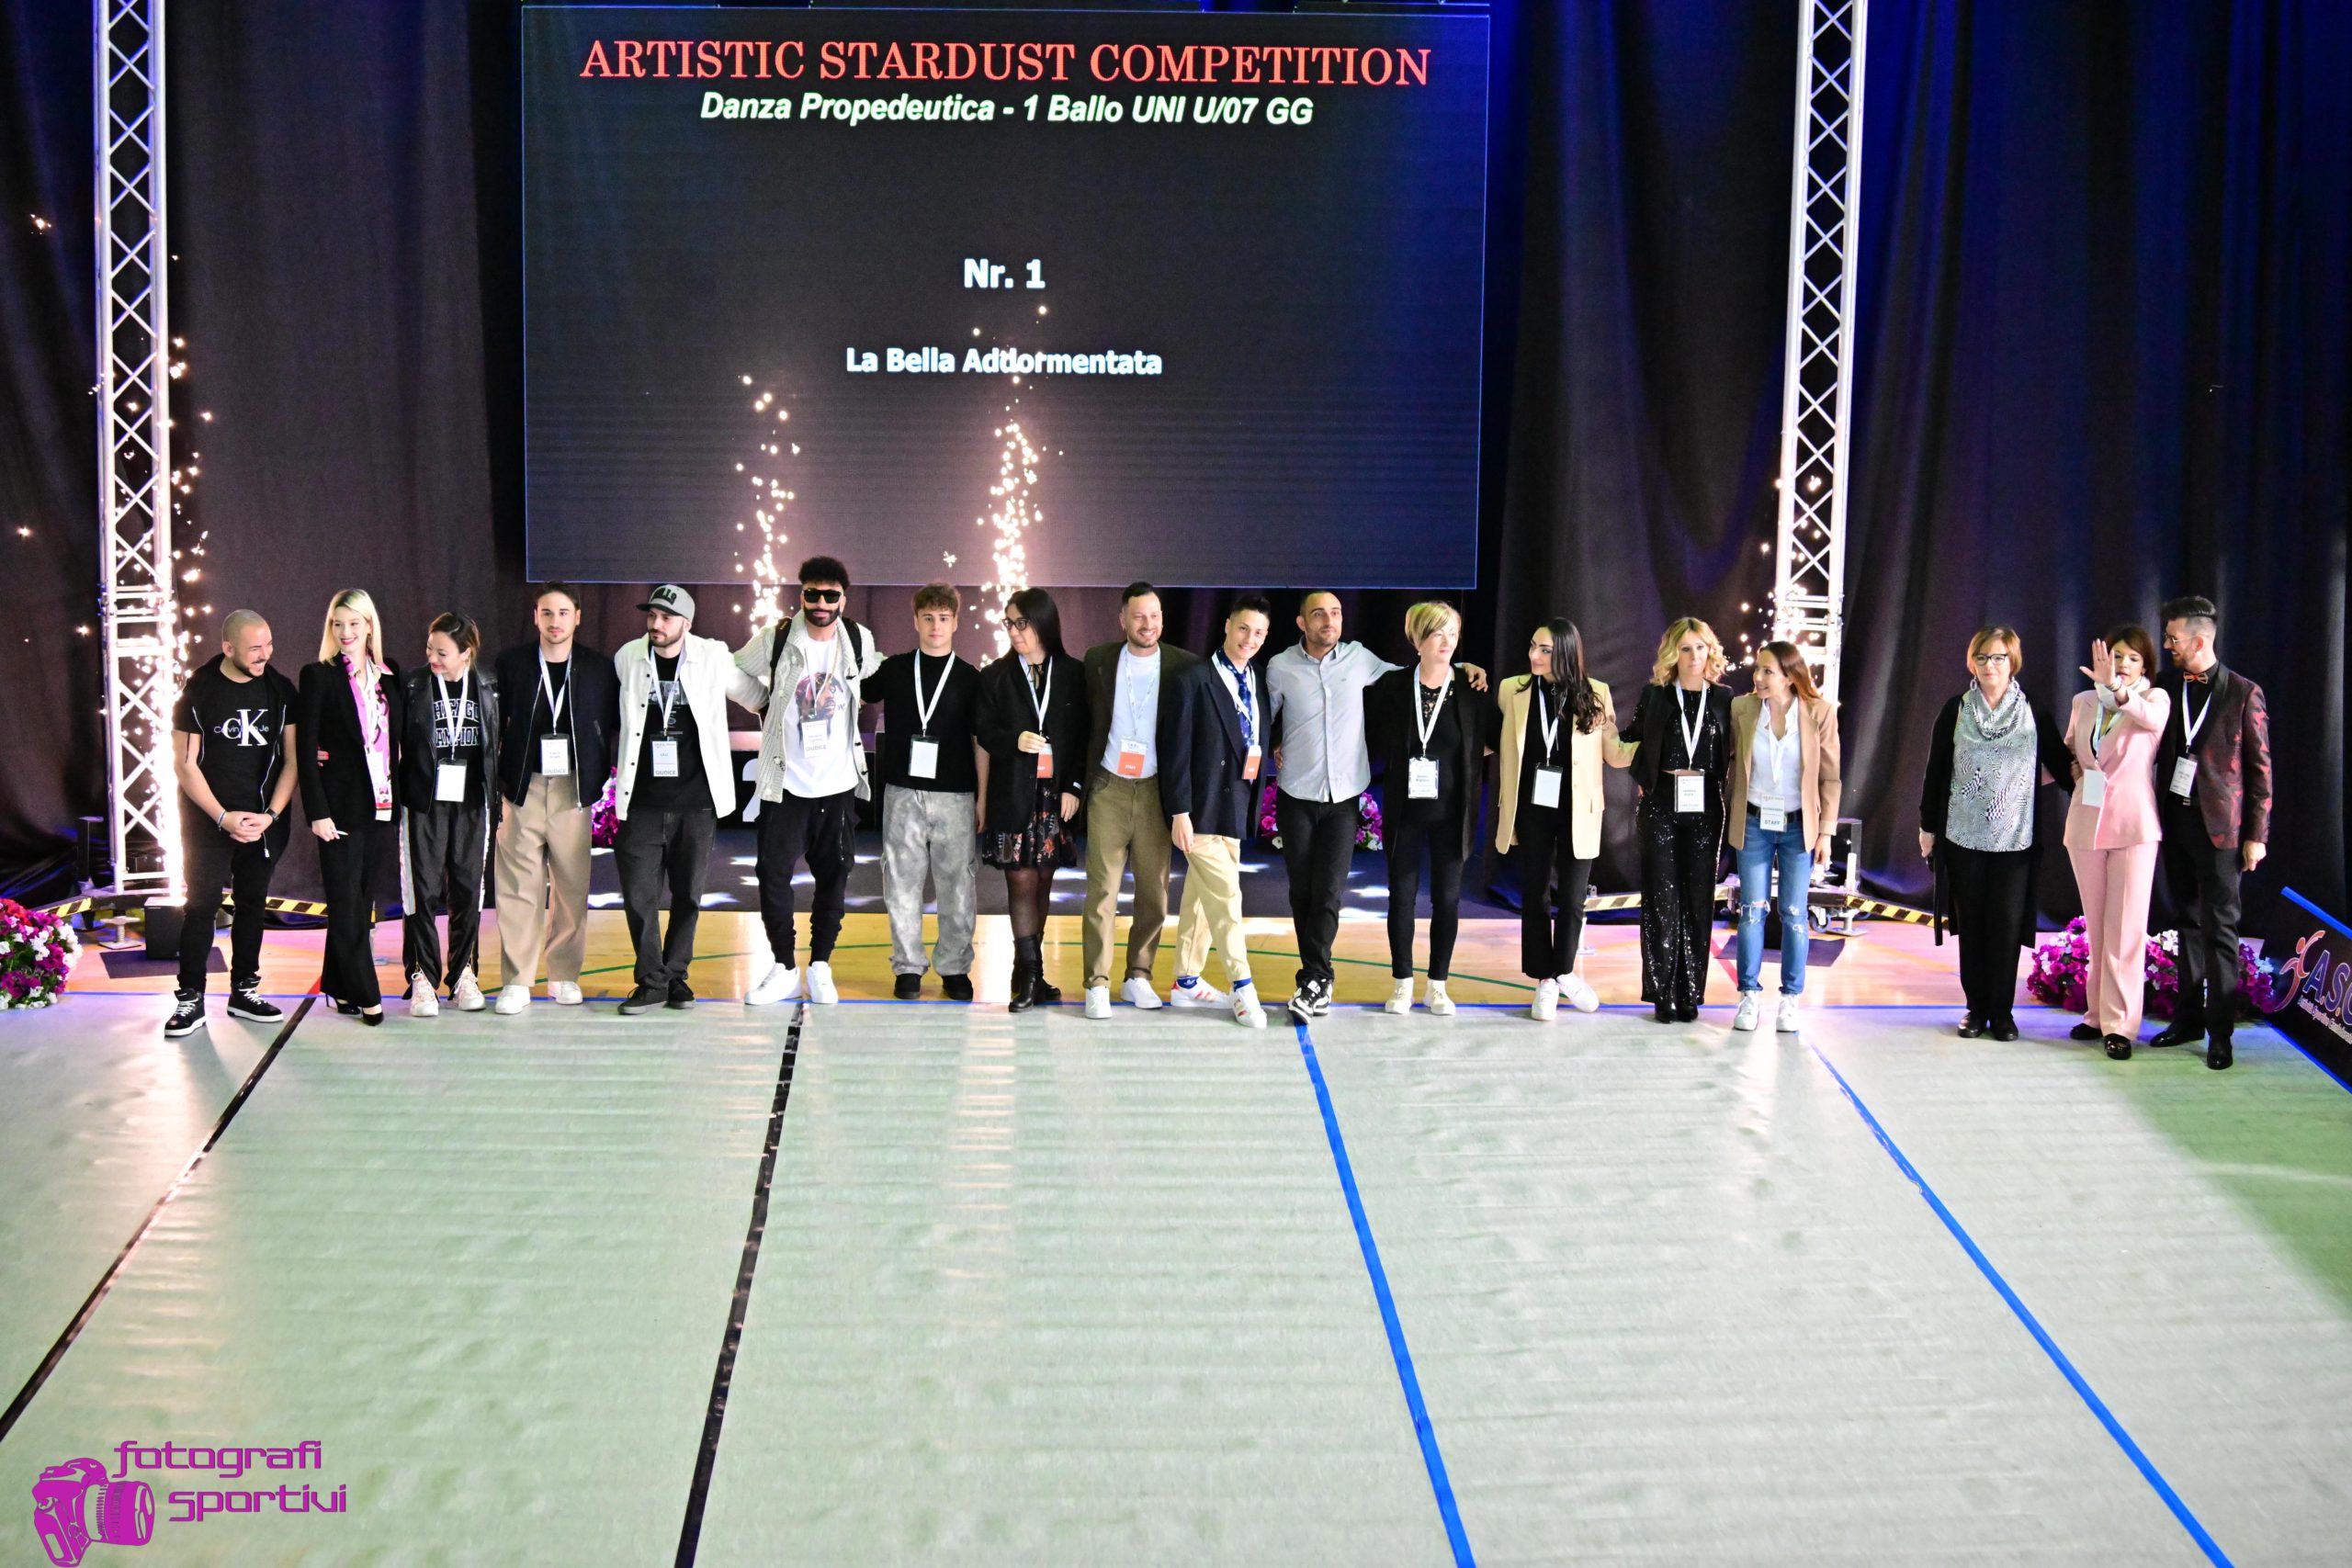 ARTISTIC STARDUST COMPETITION - Grandissimo successo di ASC DANZA